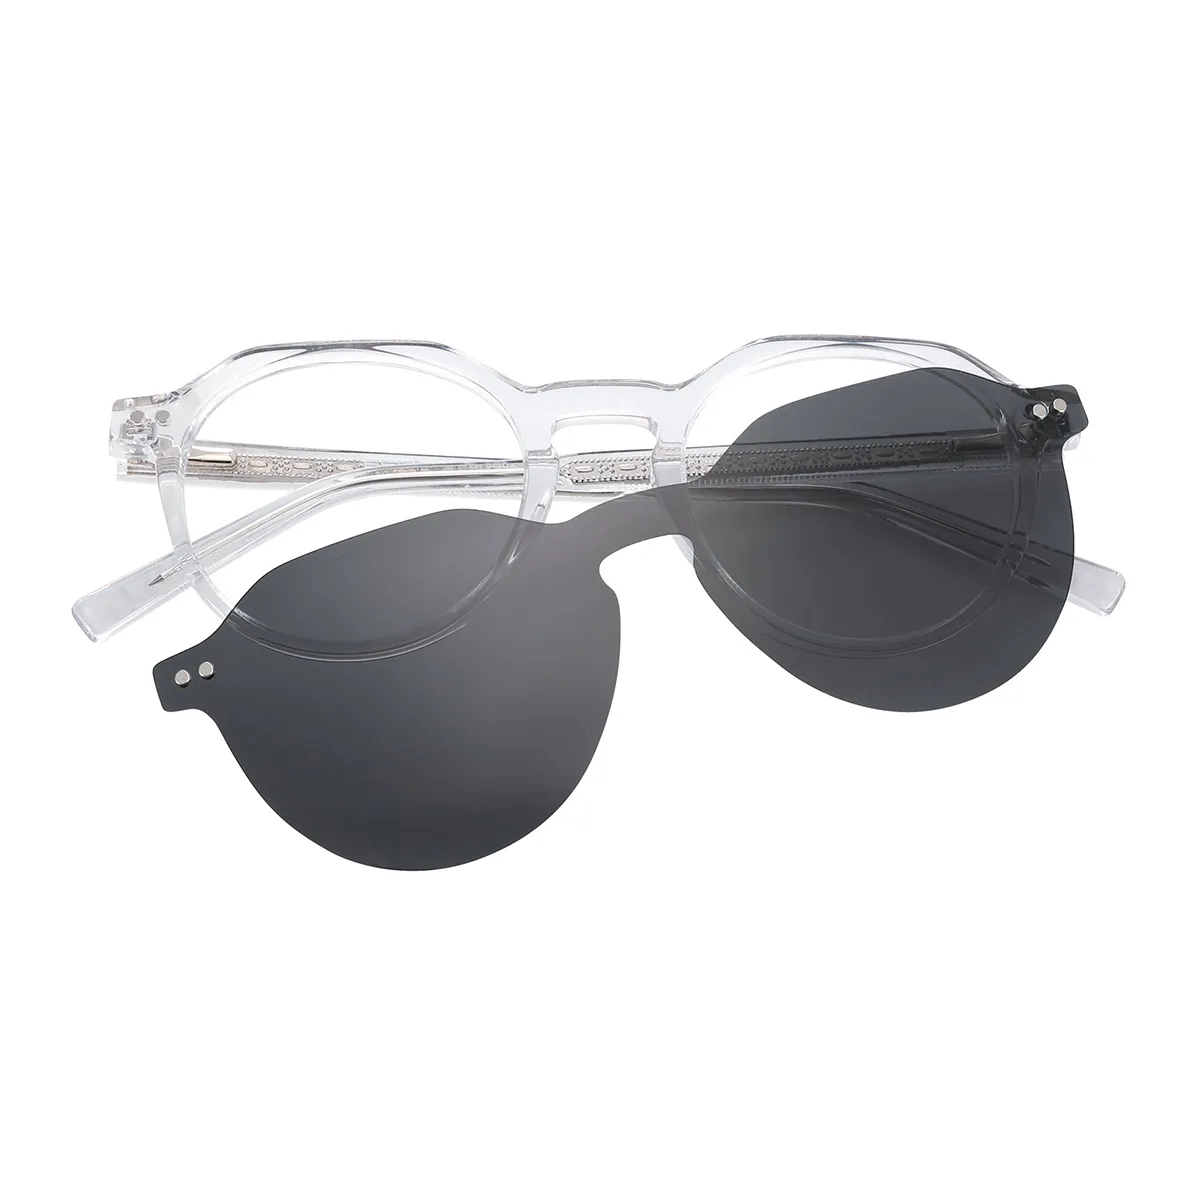 Luke - Round Clear Clip On Sunglasses for Men & Women